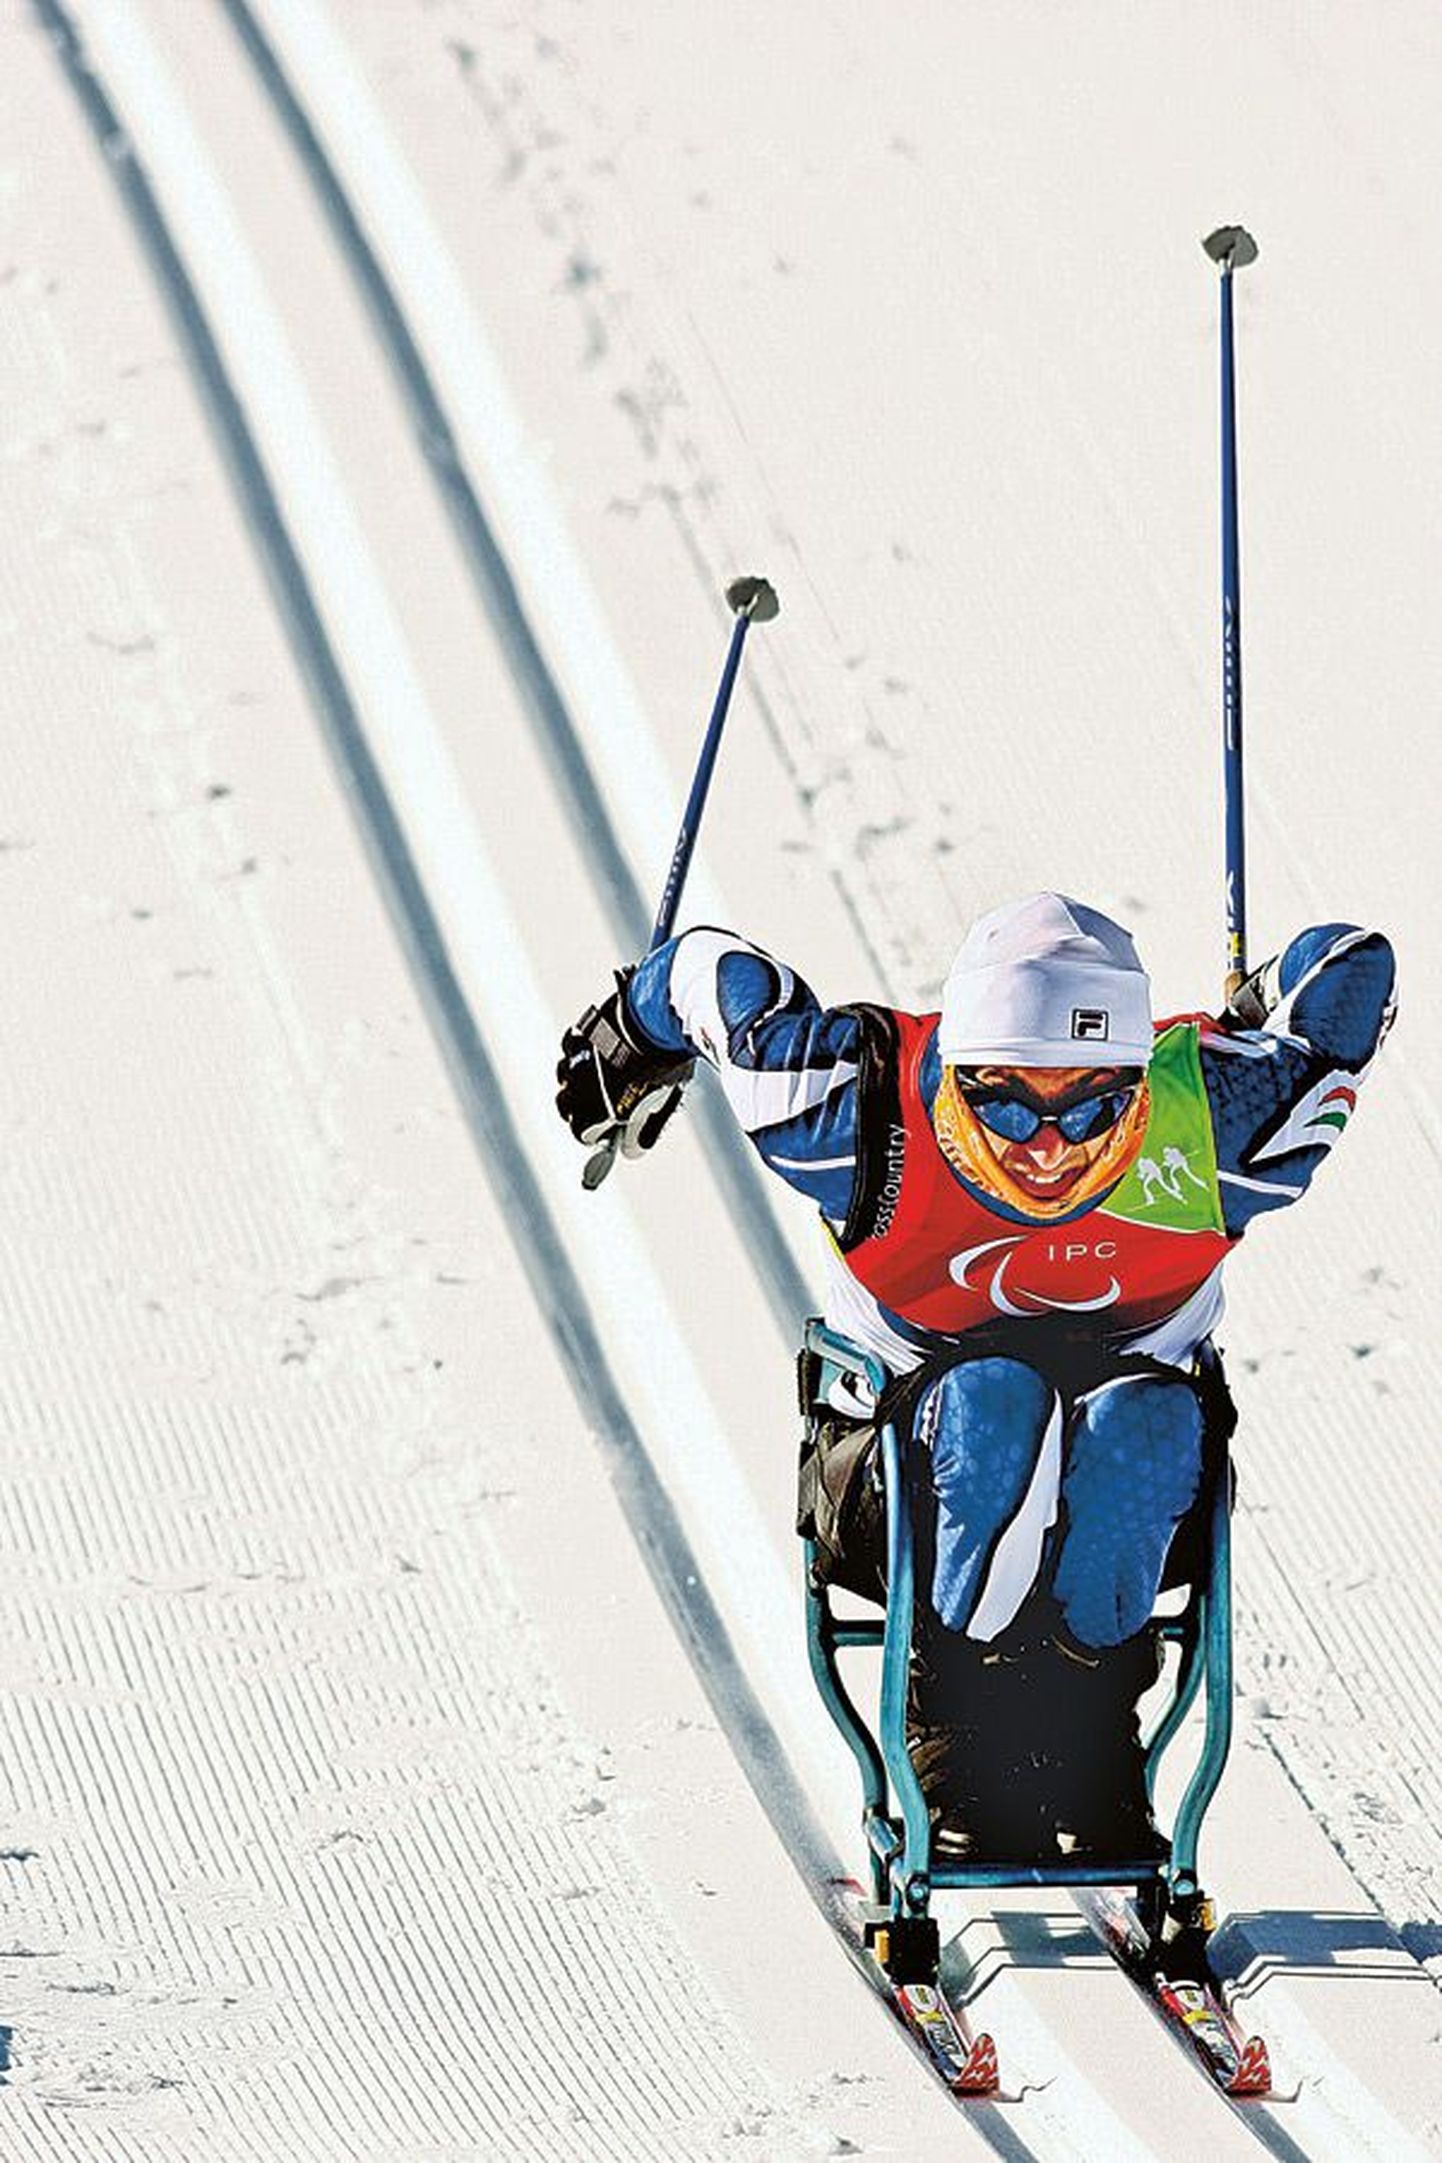 Символичный снимок, на котором итальянский лыжник на санях борется за олимпийскую медаль. Фотографии эстонца нет, поскольку у нас этот вид спорта не культивируется.